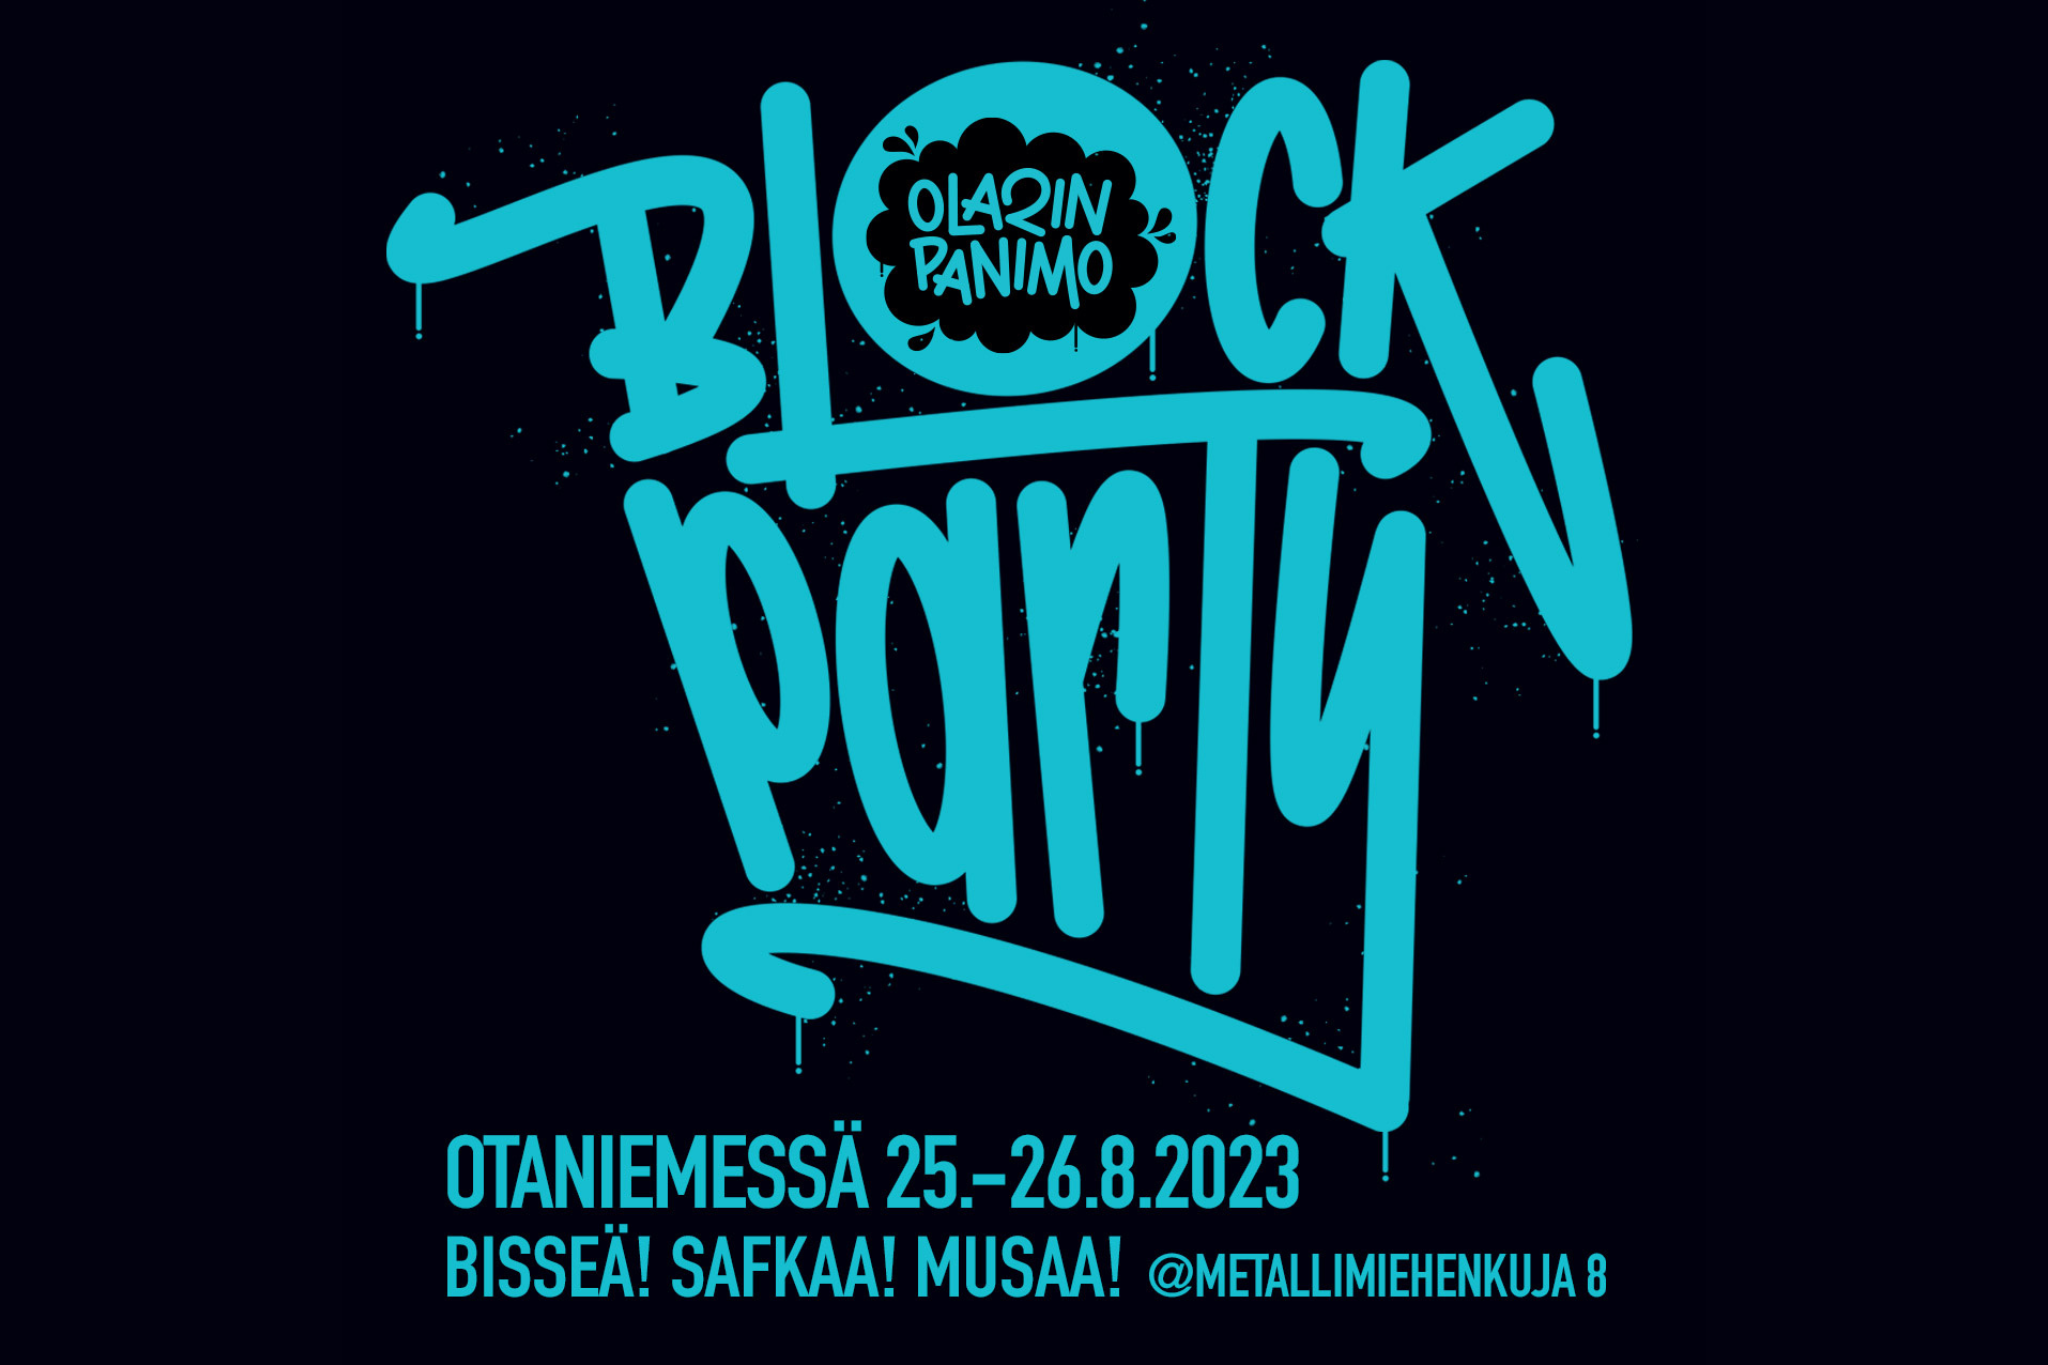 Olarin Panimon BLOCK PARTY Otaniemessä